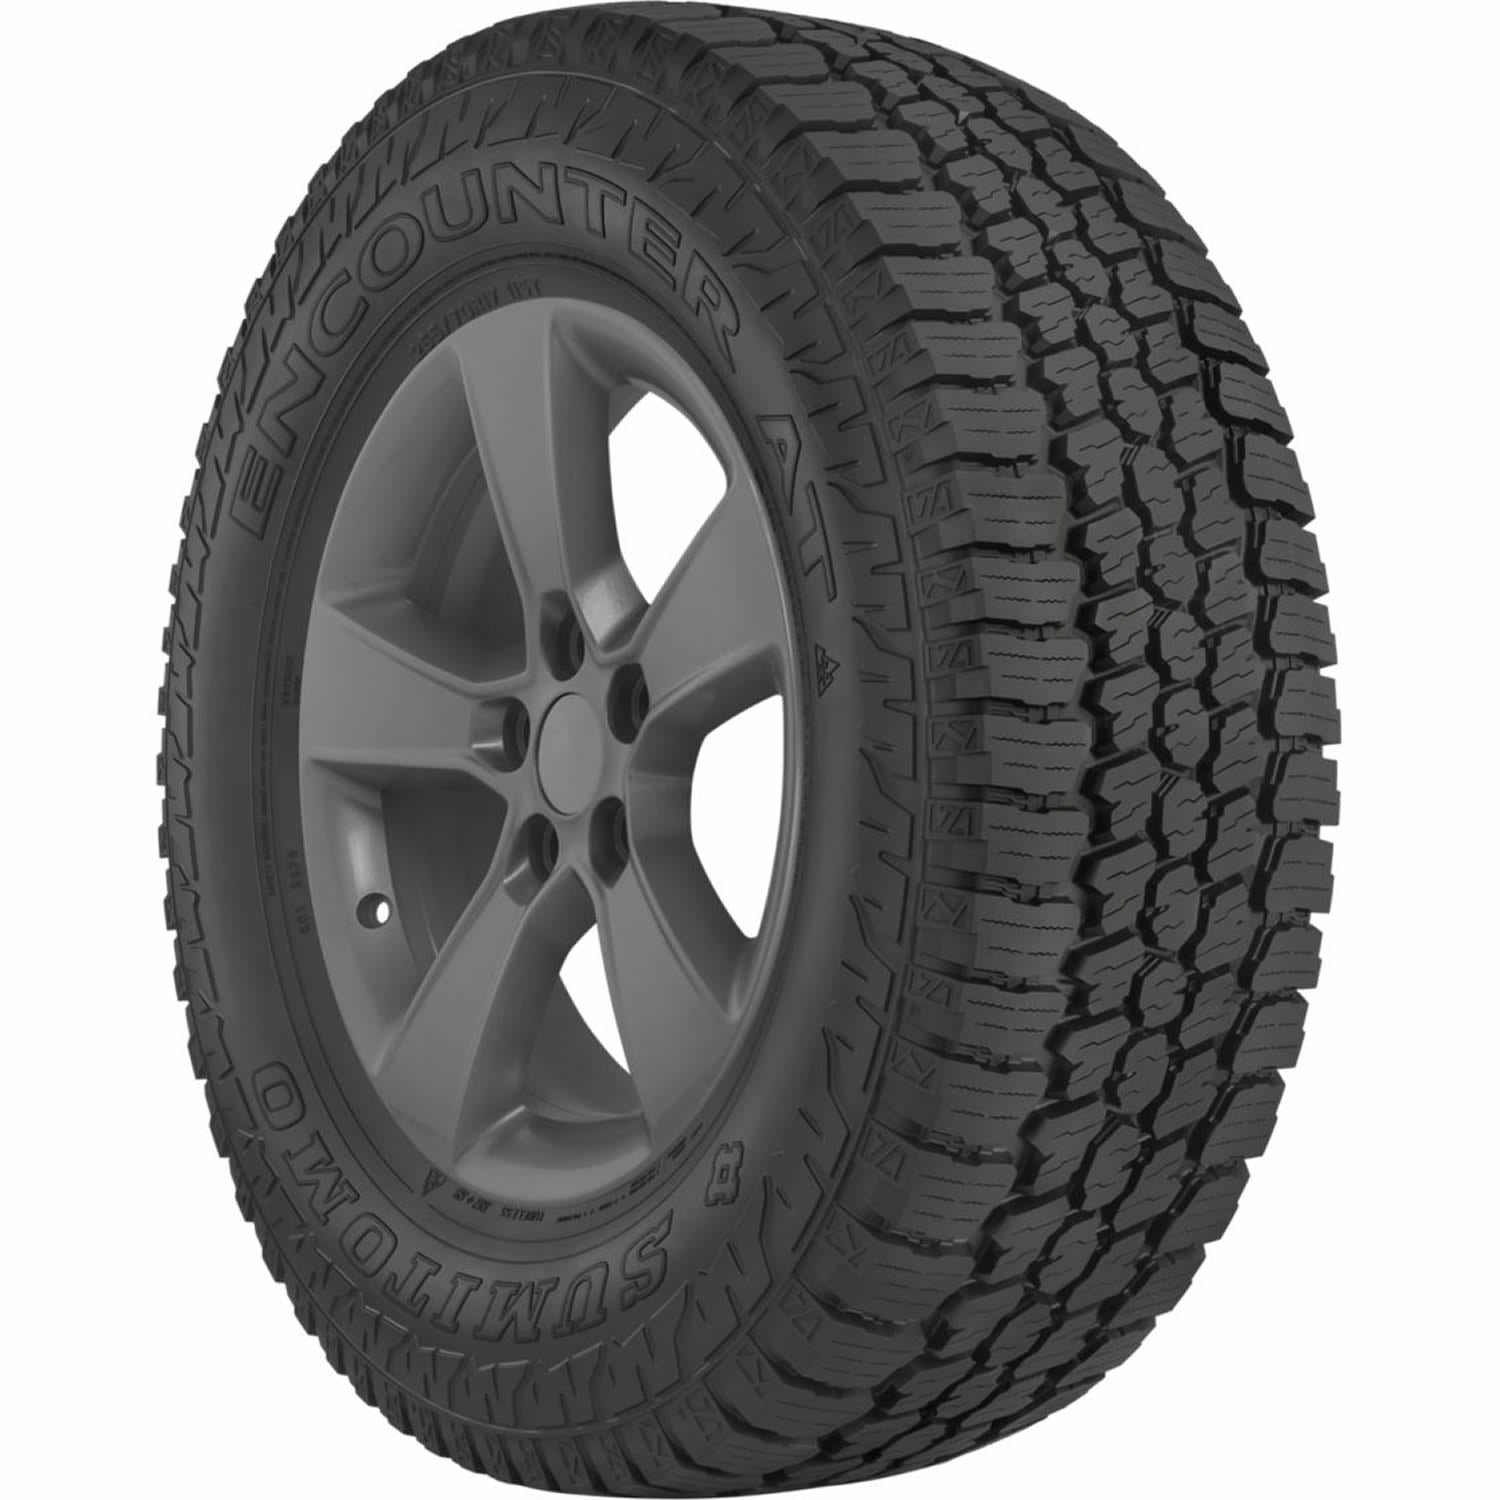 SUMITOMO ENCOUNTER AT 245/70R16 (29.6X10R 16) Tires